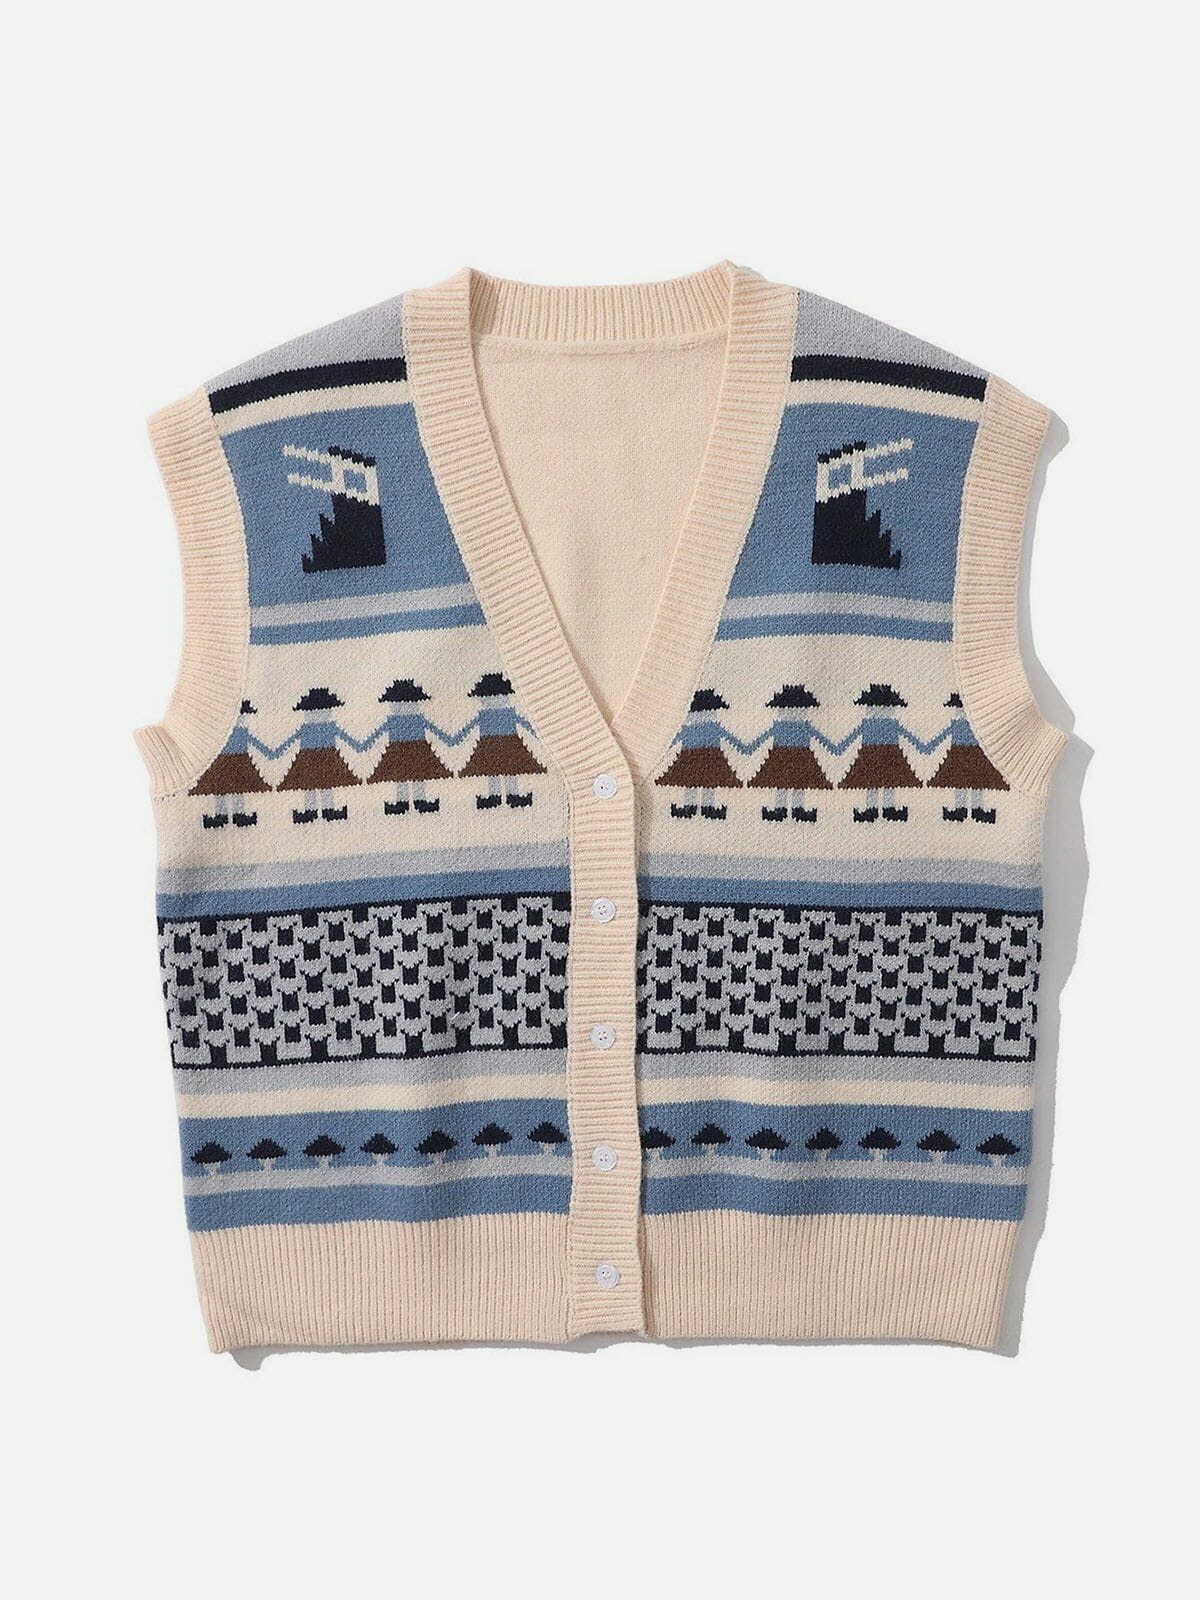 hand in hand knit sweater vest retro streetwear staple 6975